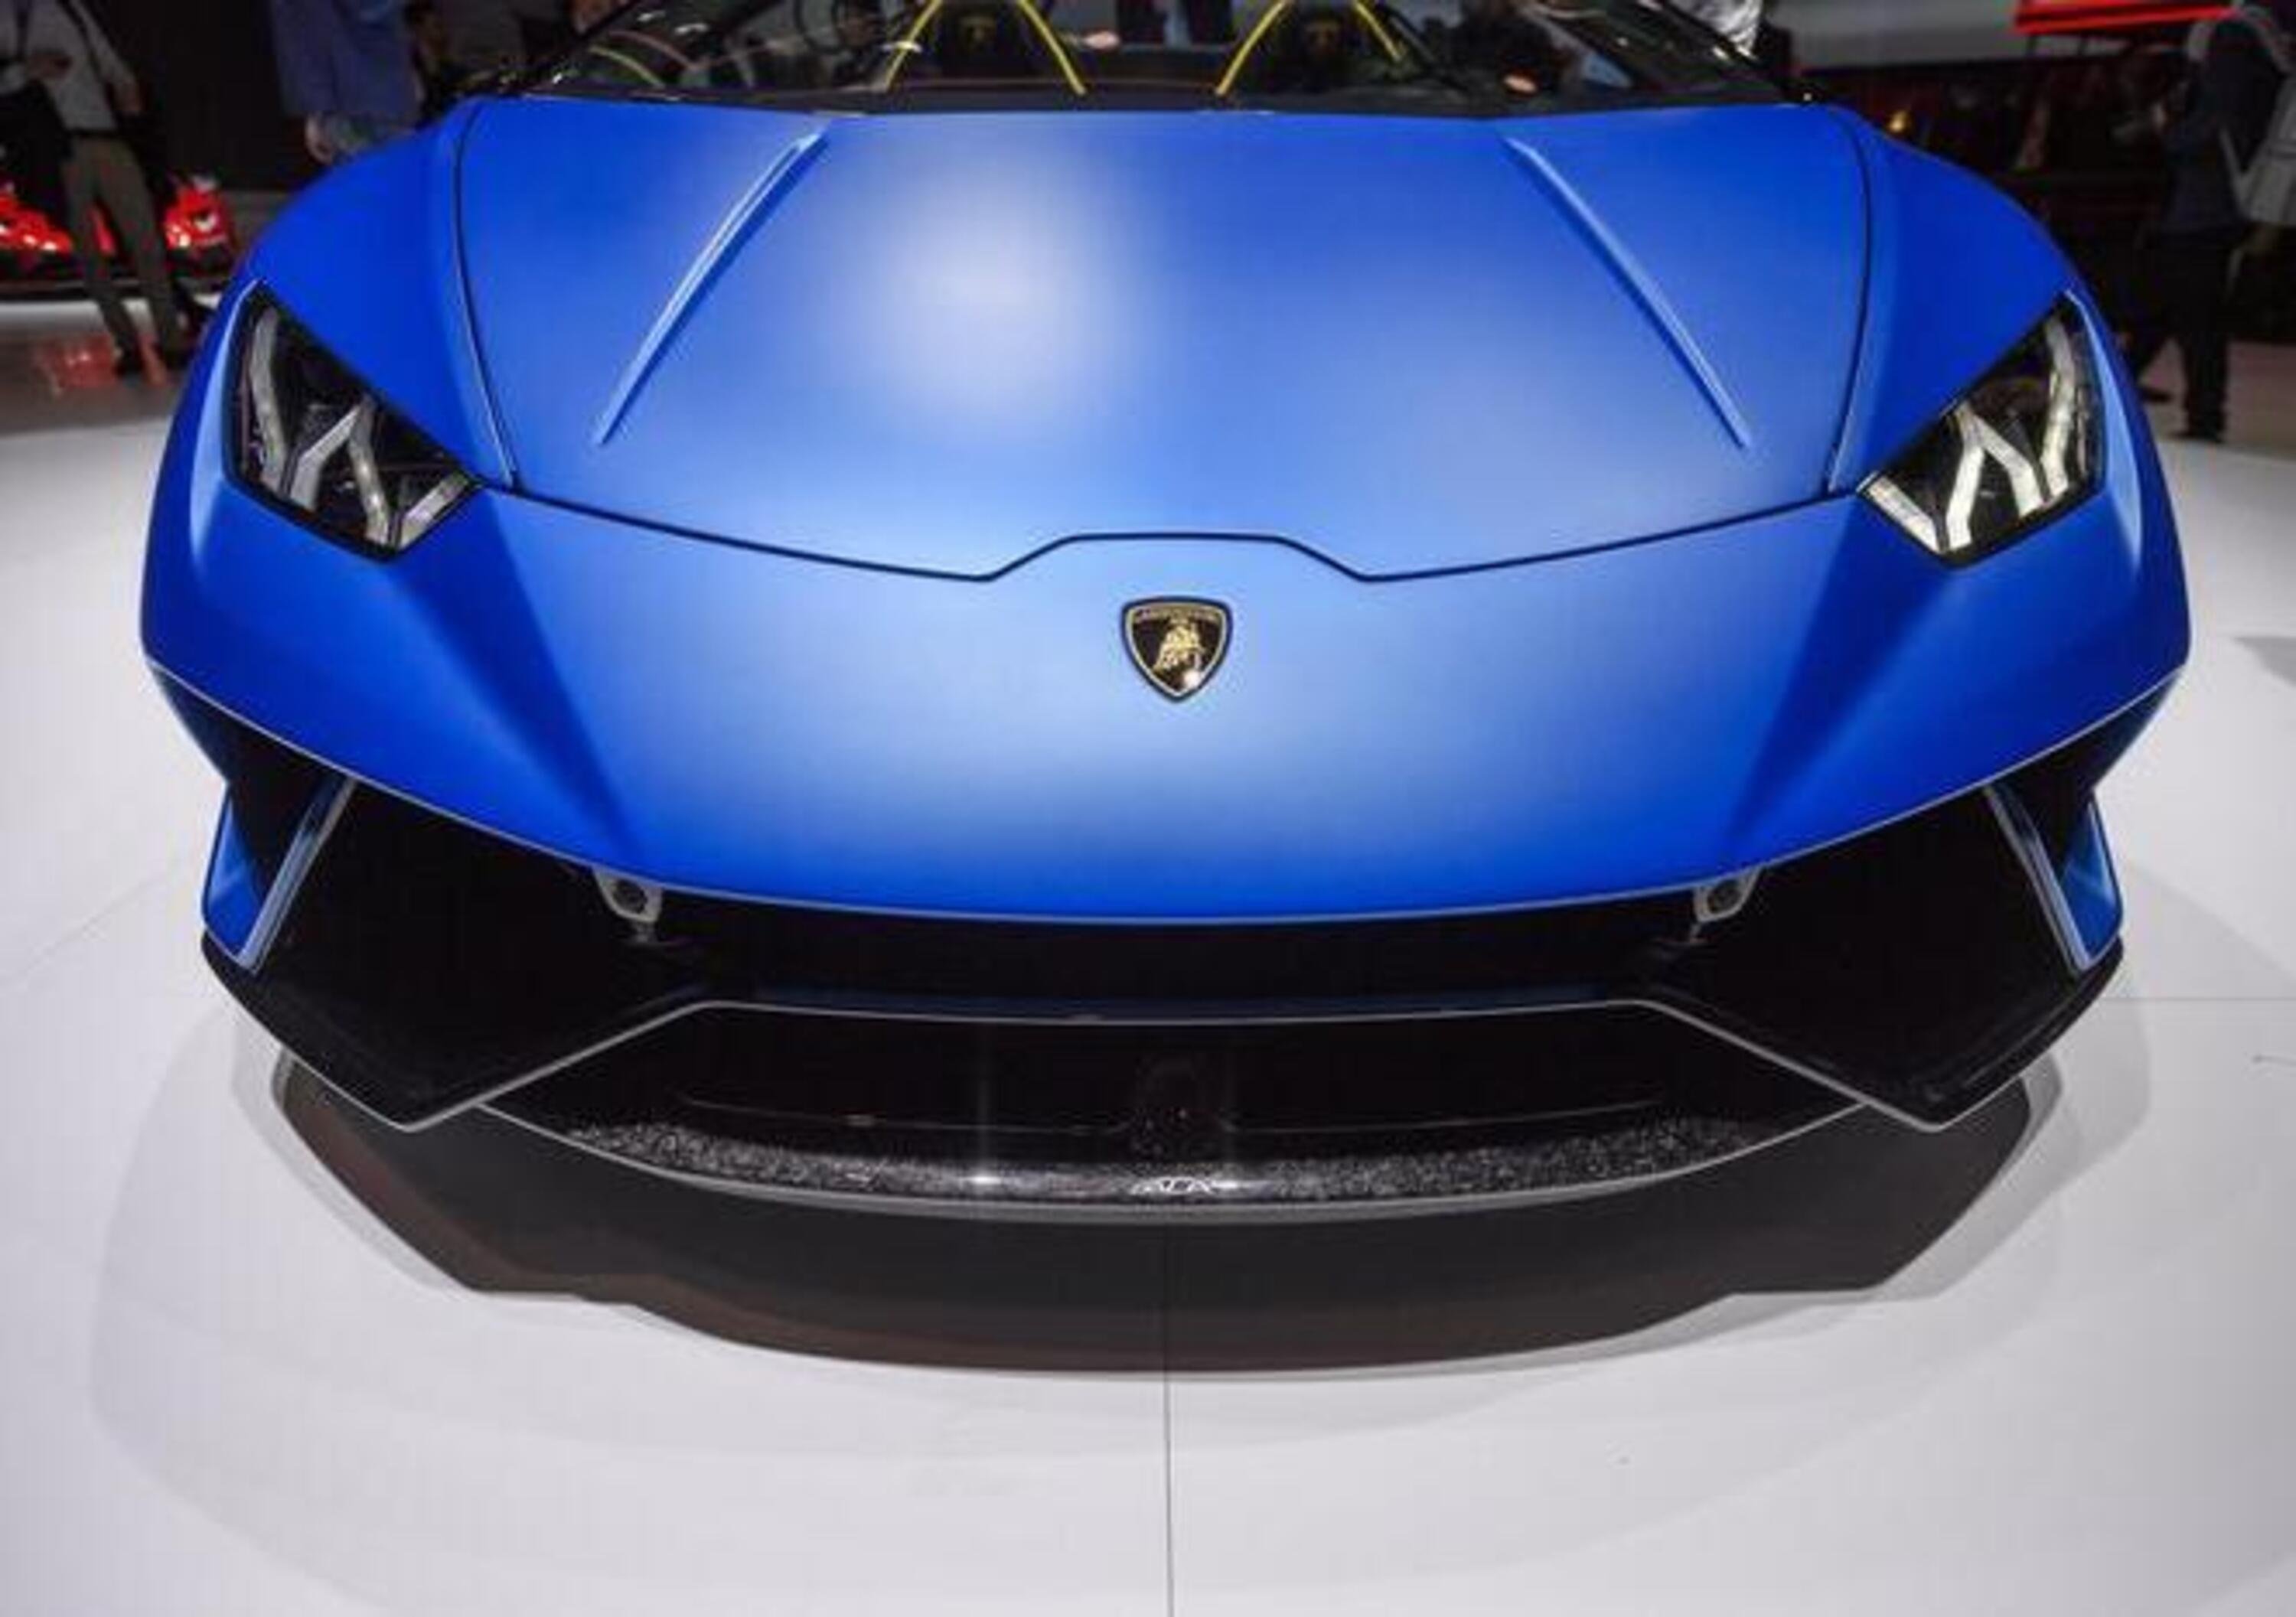 Lamborghini, fatturato record: +28% nel 2019